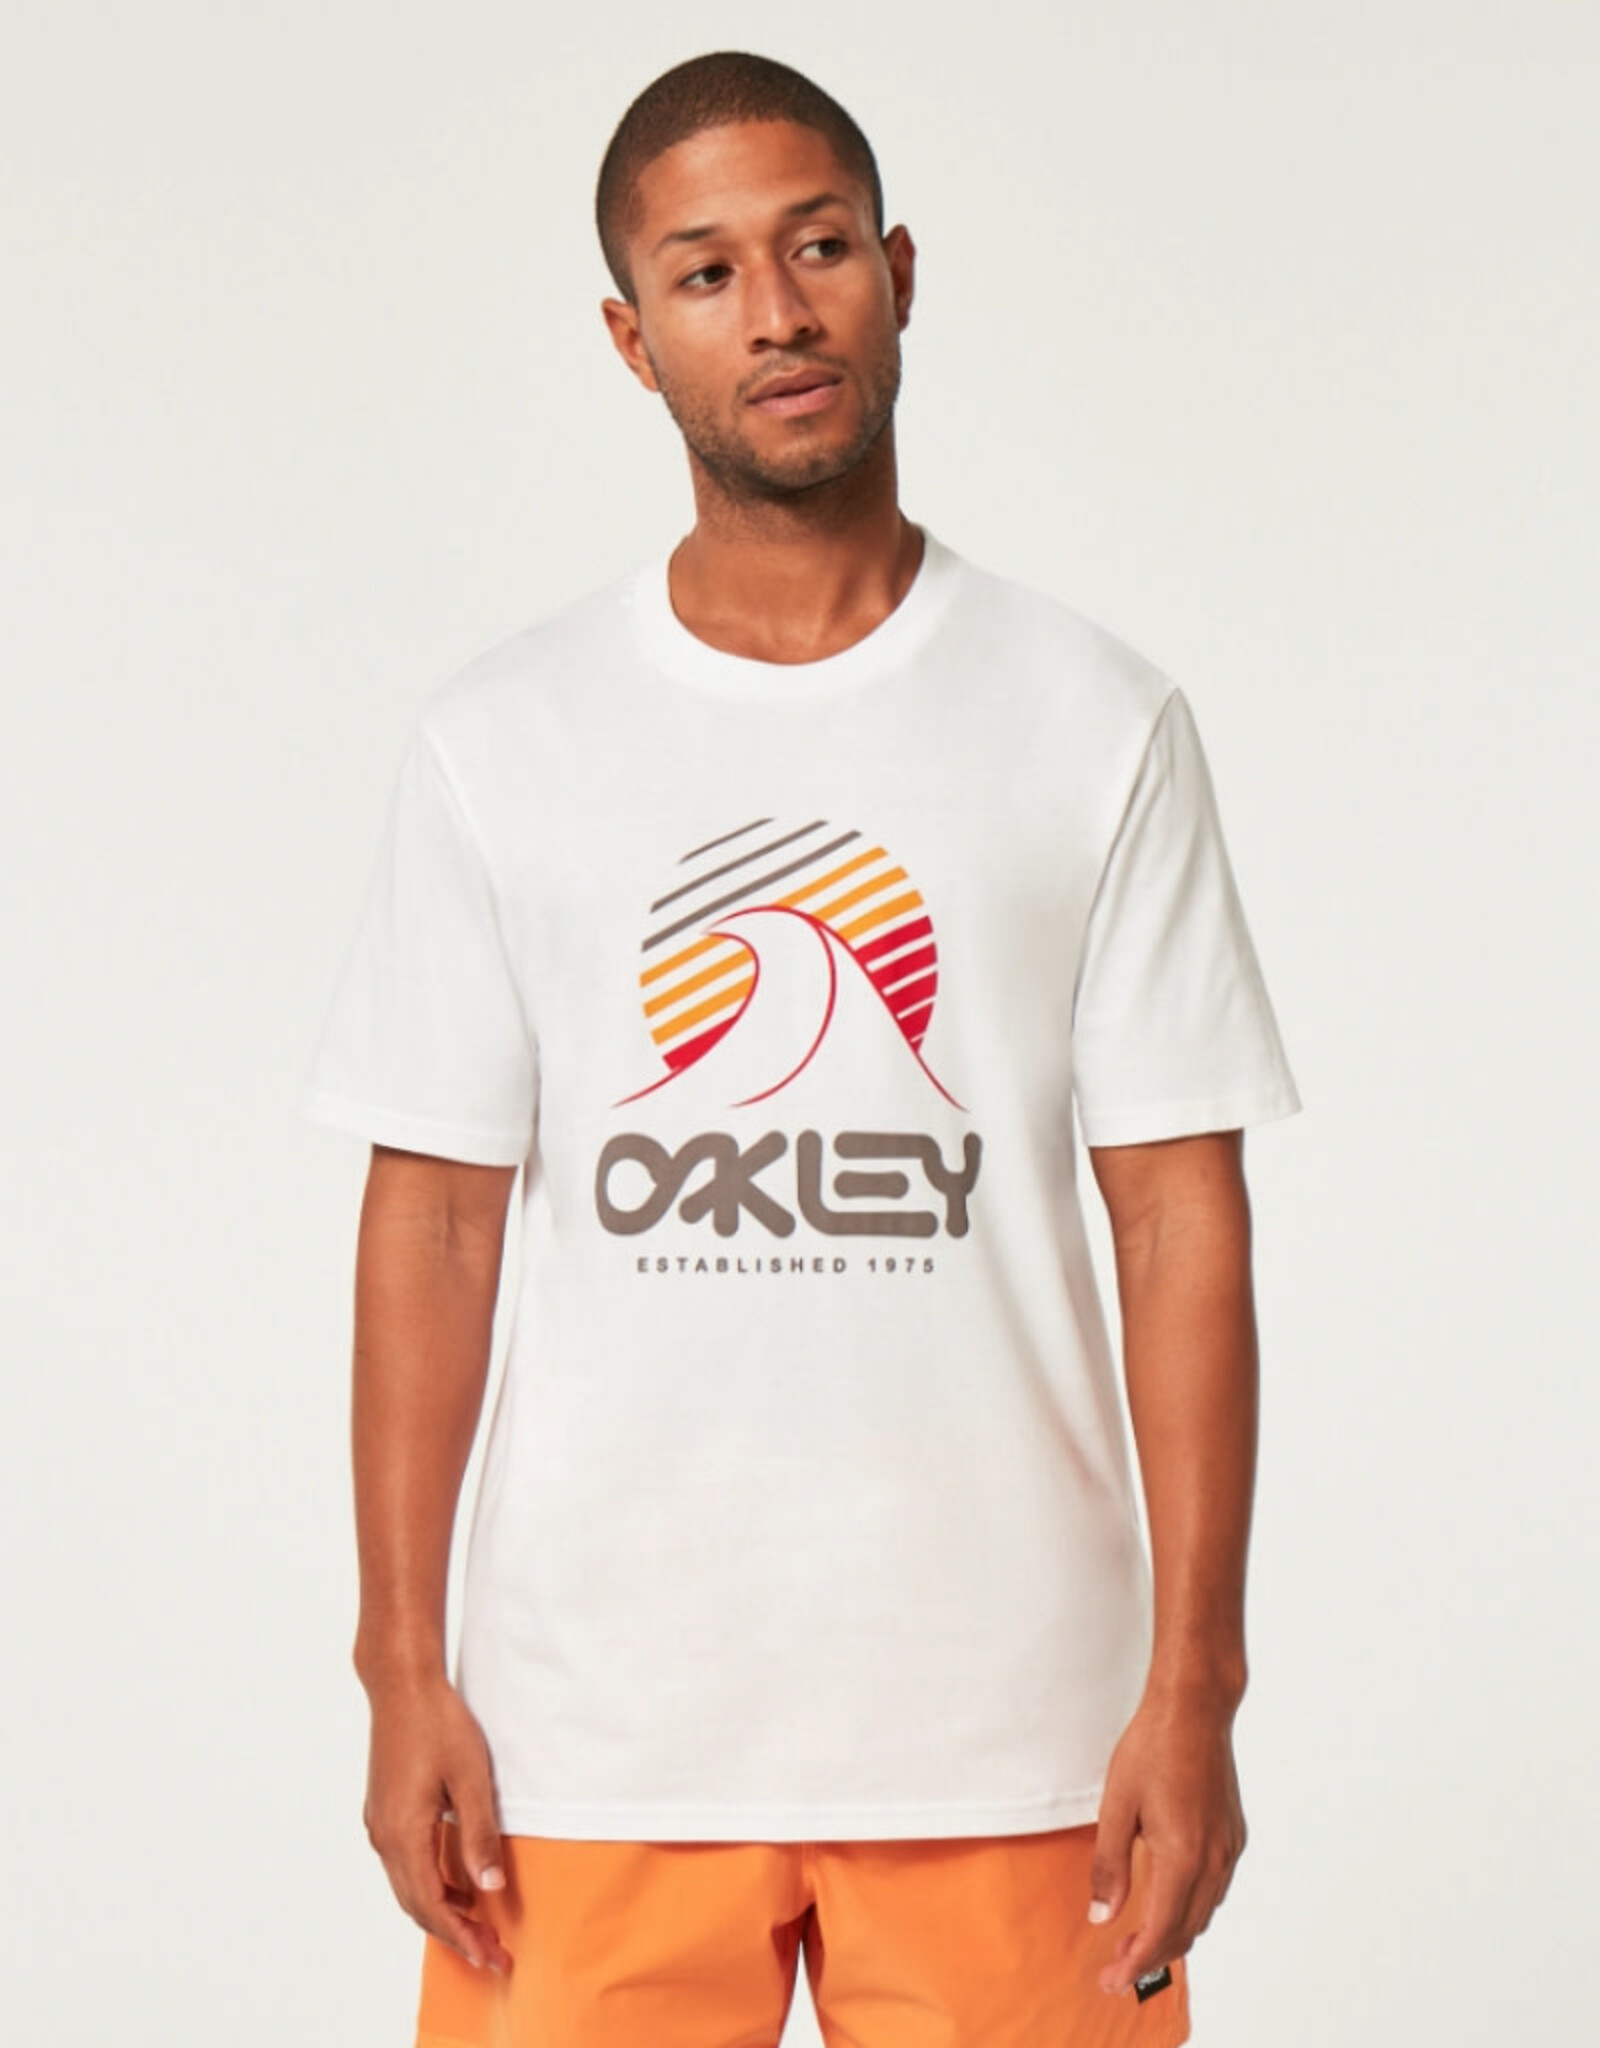 Oakley Oakley One Wave B1B Tee White